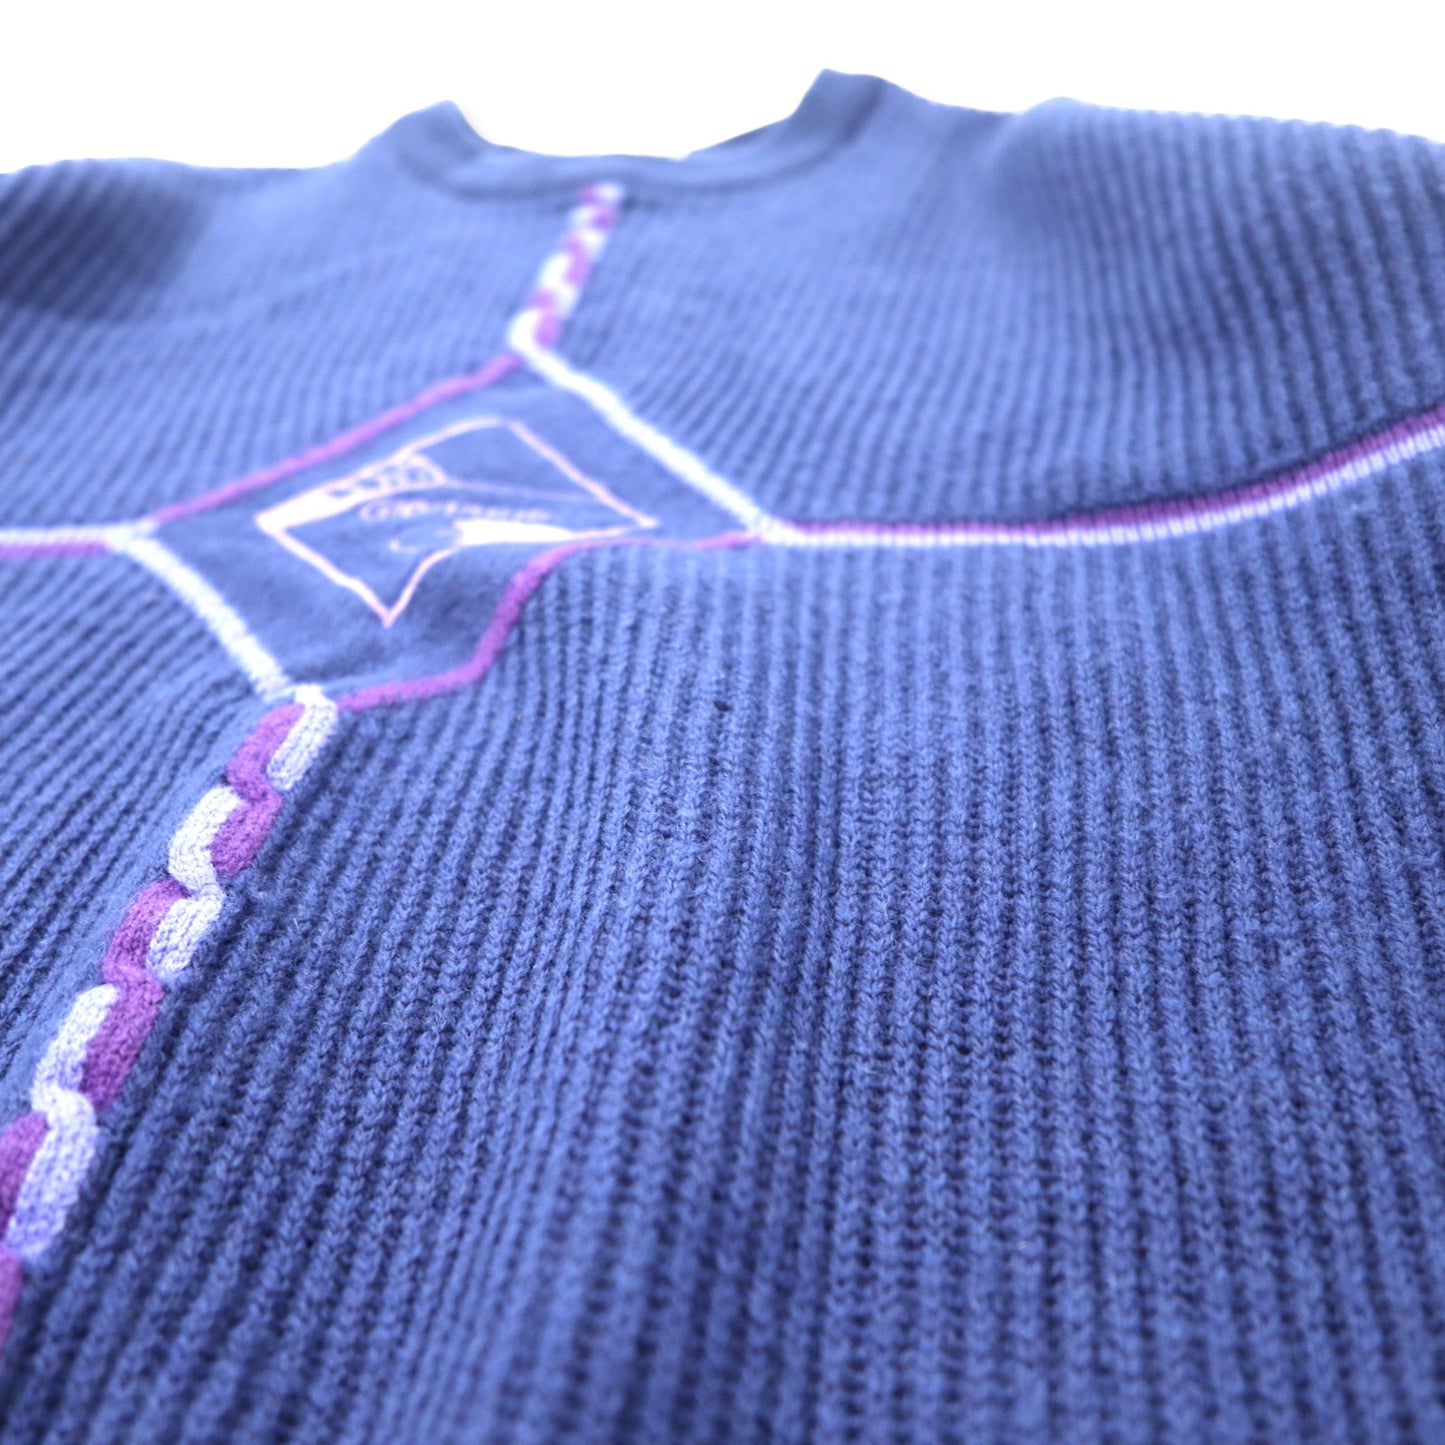 Glenmuir スコットランド製 リブ ニット セーター 42 ネイビー ラムウール 刺繍